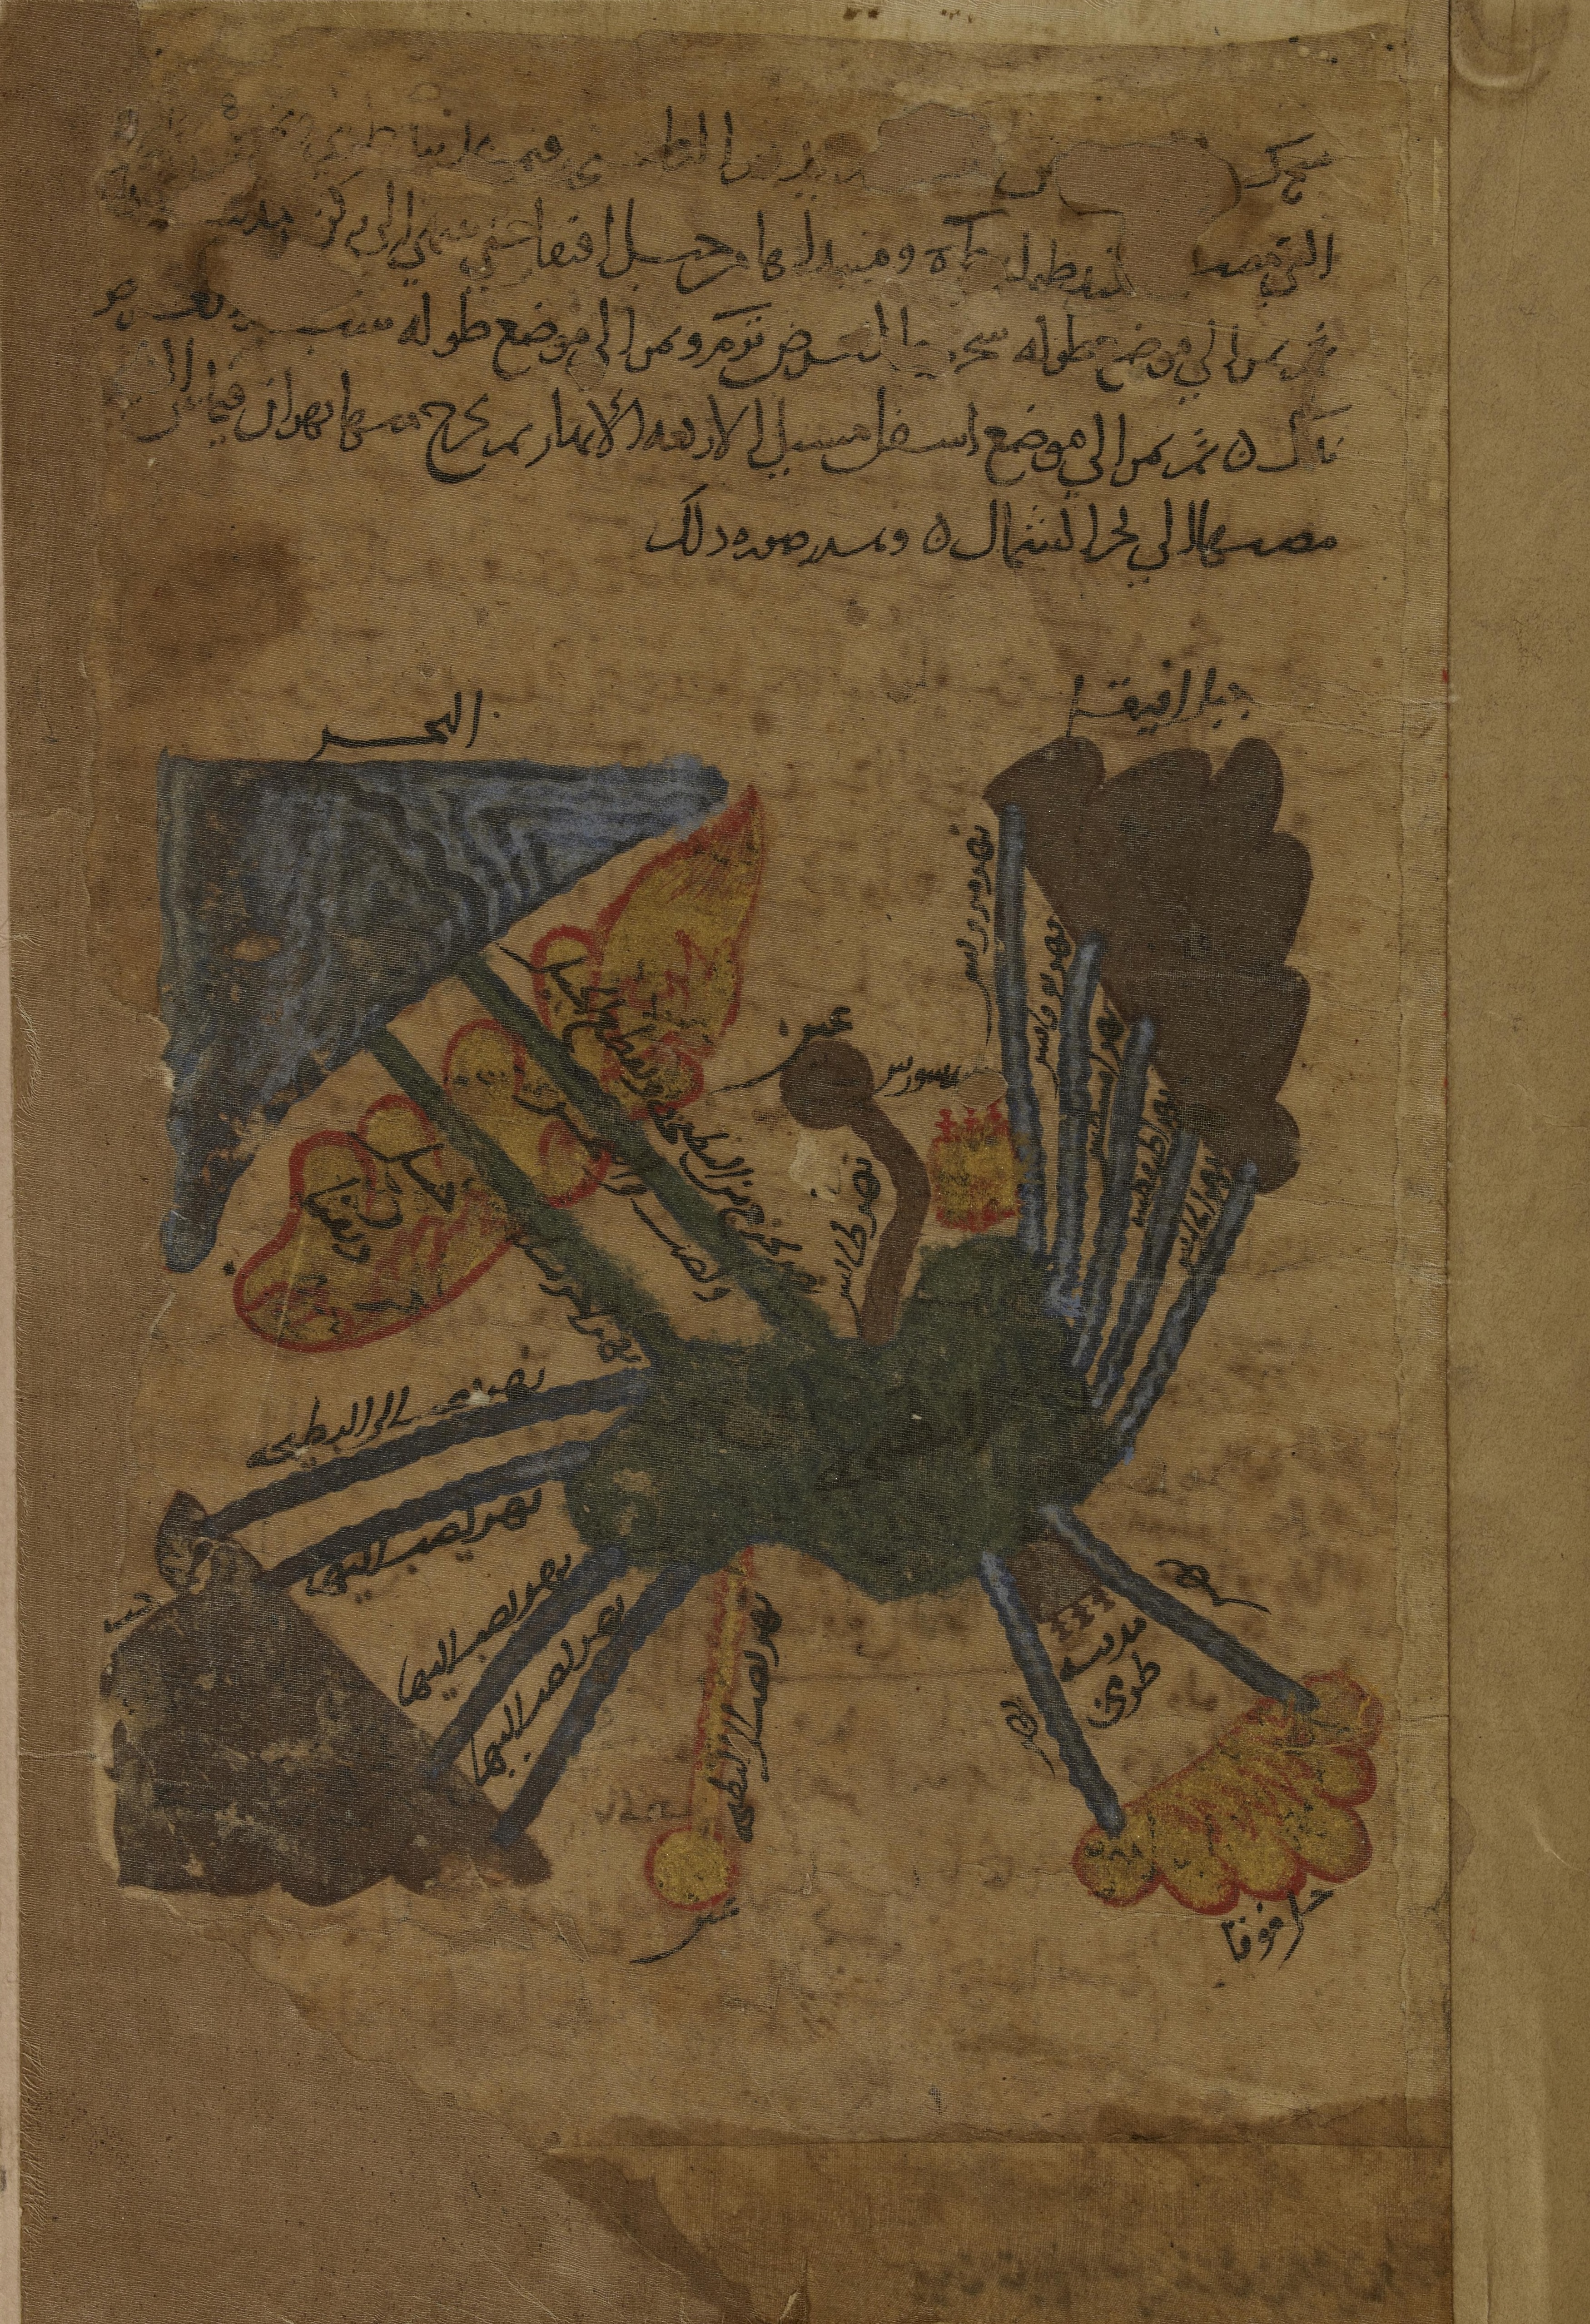 Une adaptation arabe par Al-Khwarizmi de la géographie de Ptolémée 